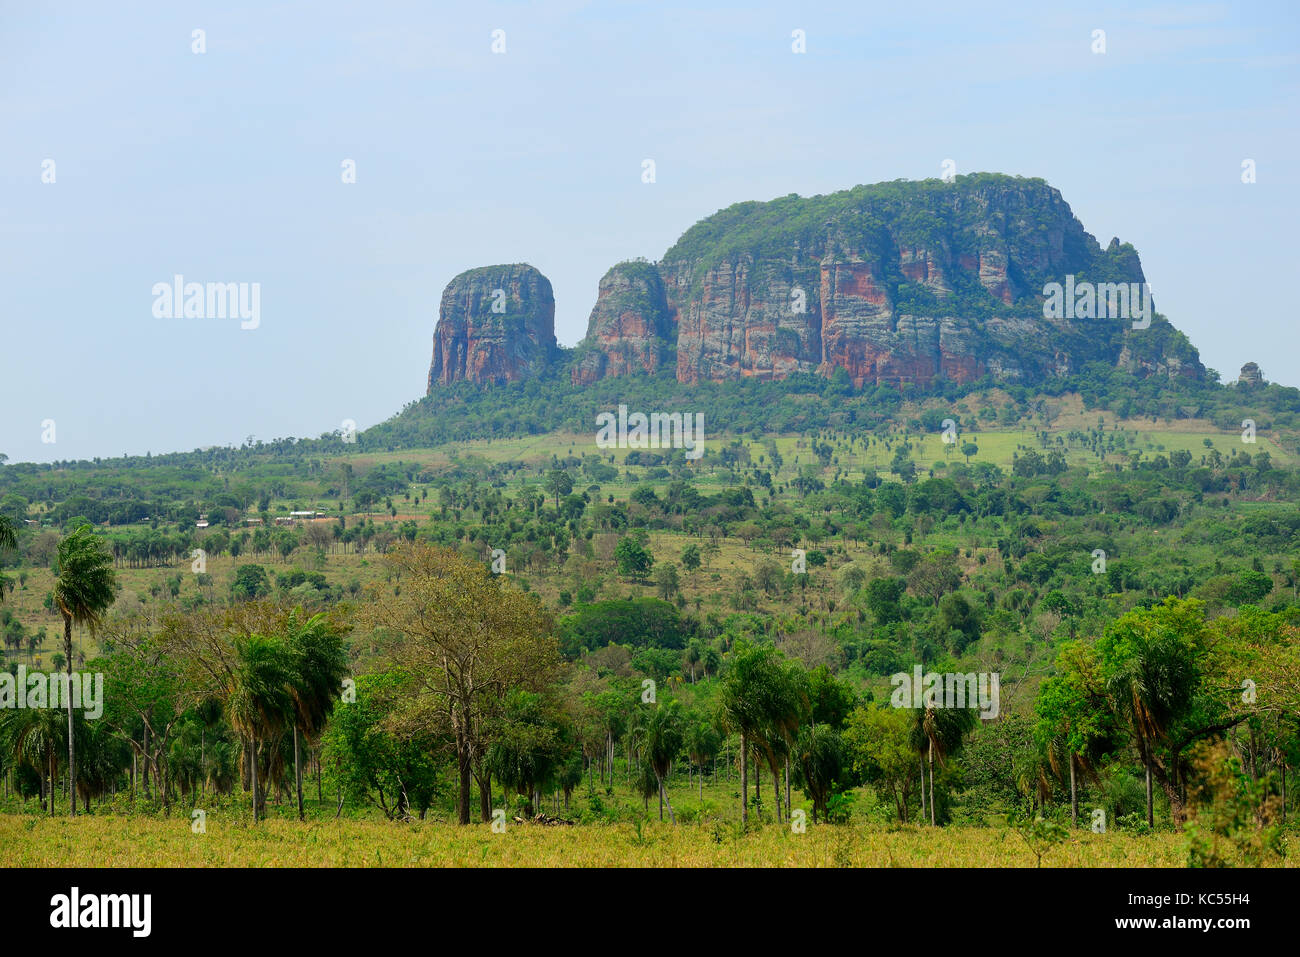 Paysage typique avec rock formation cerro memby en arrière-plan, yby yau, Concepcion, Paraguay Banque D'Images